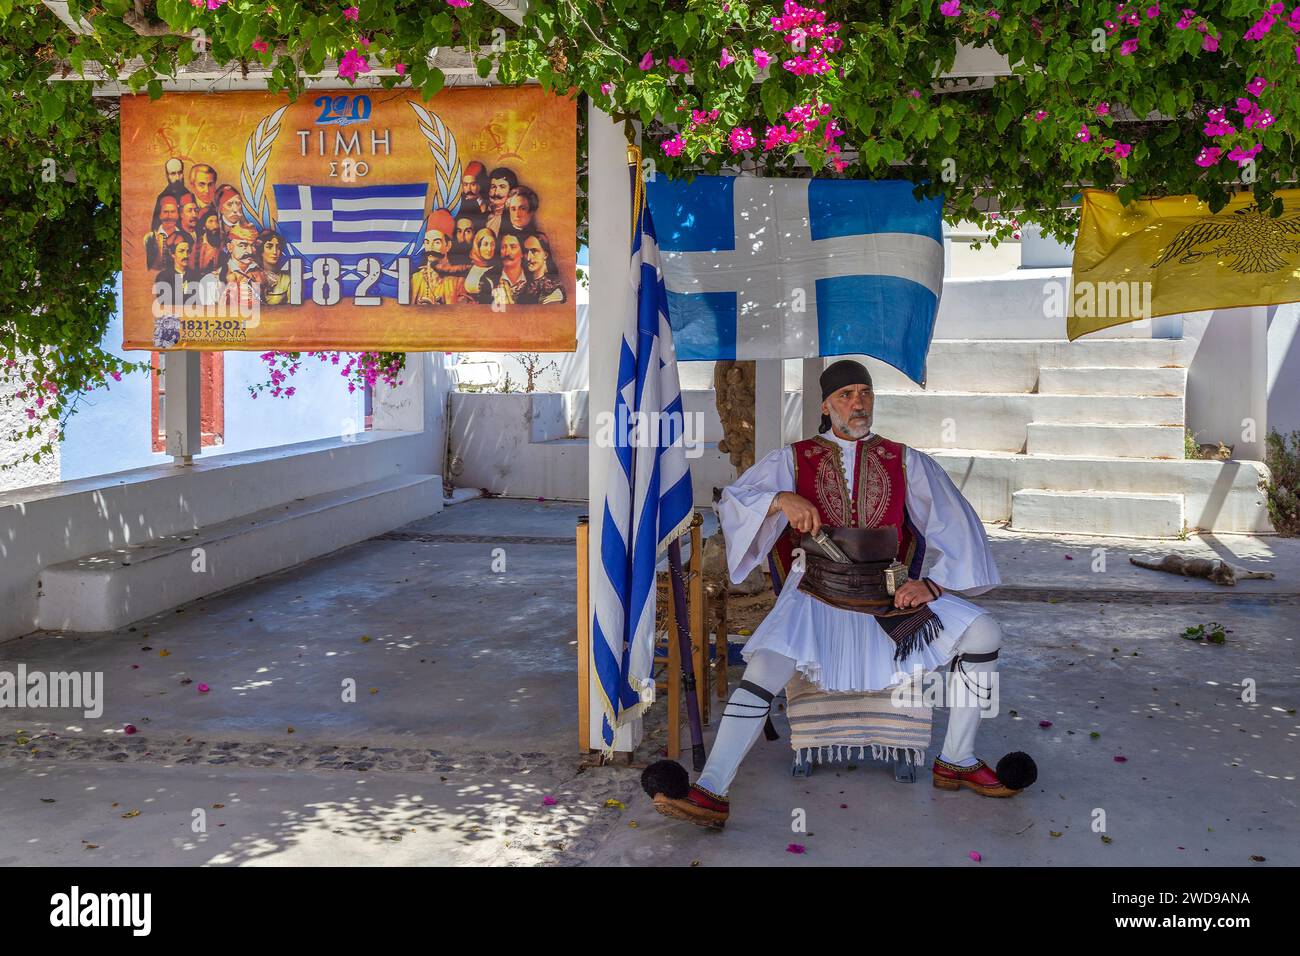 OIA, SANTORINI, GRIECHENLAND-21.JUNI 2021: Griechenland 1821-2021 feiert das 200-jährige Jubiläum der griechischen Revolution. Mann in traditioneller Volkstracht gekleidet. Stockfoto